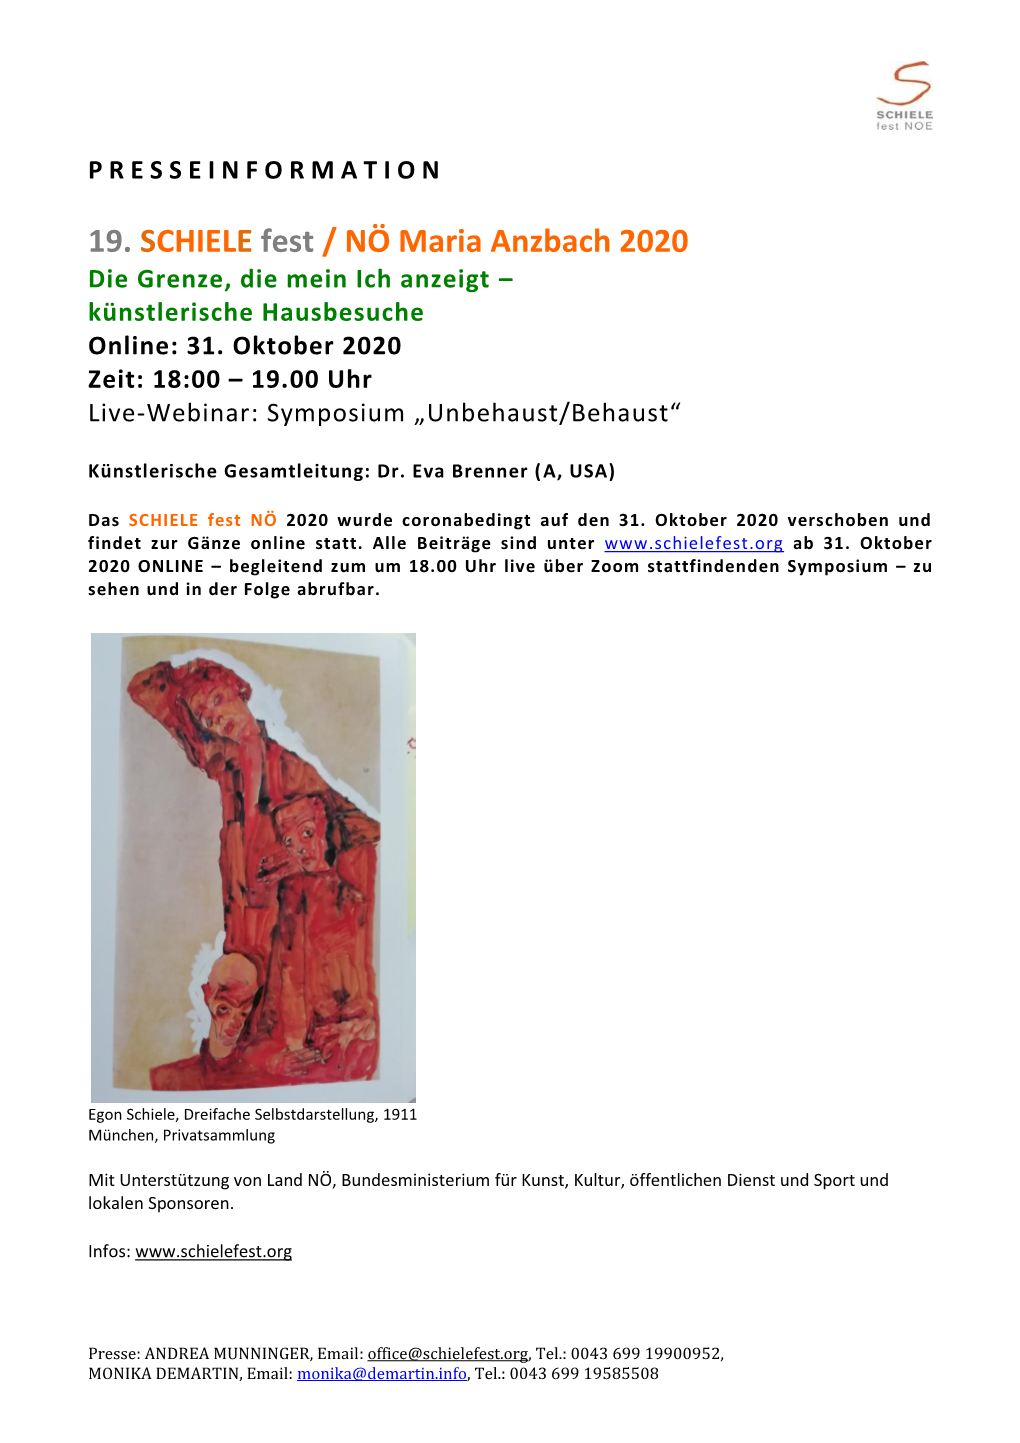 19. SCHIELE Fest / NÖ Maria Anzbach 2020 Die Grenze, Die Mein Ich Anzeigt – Künstlerische Hausbesuche Online: 31